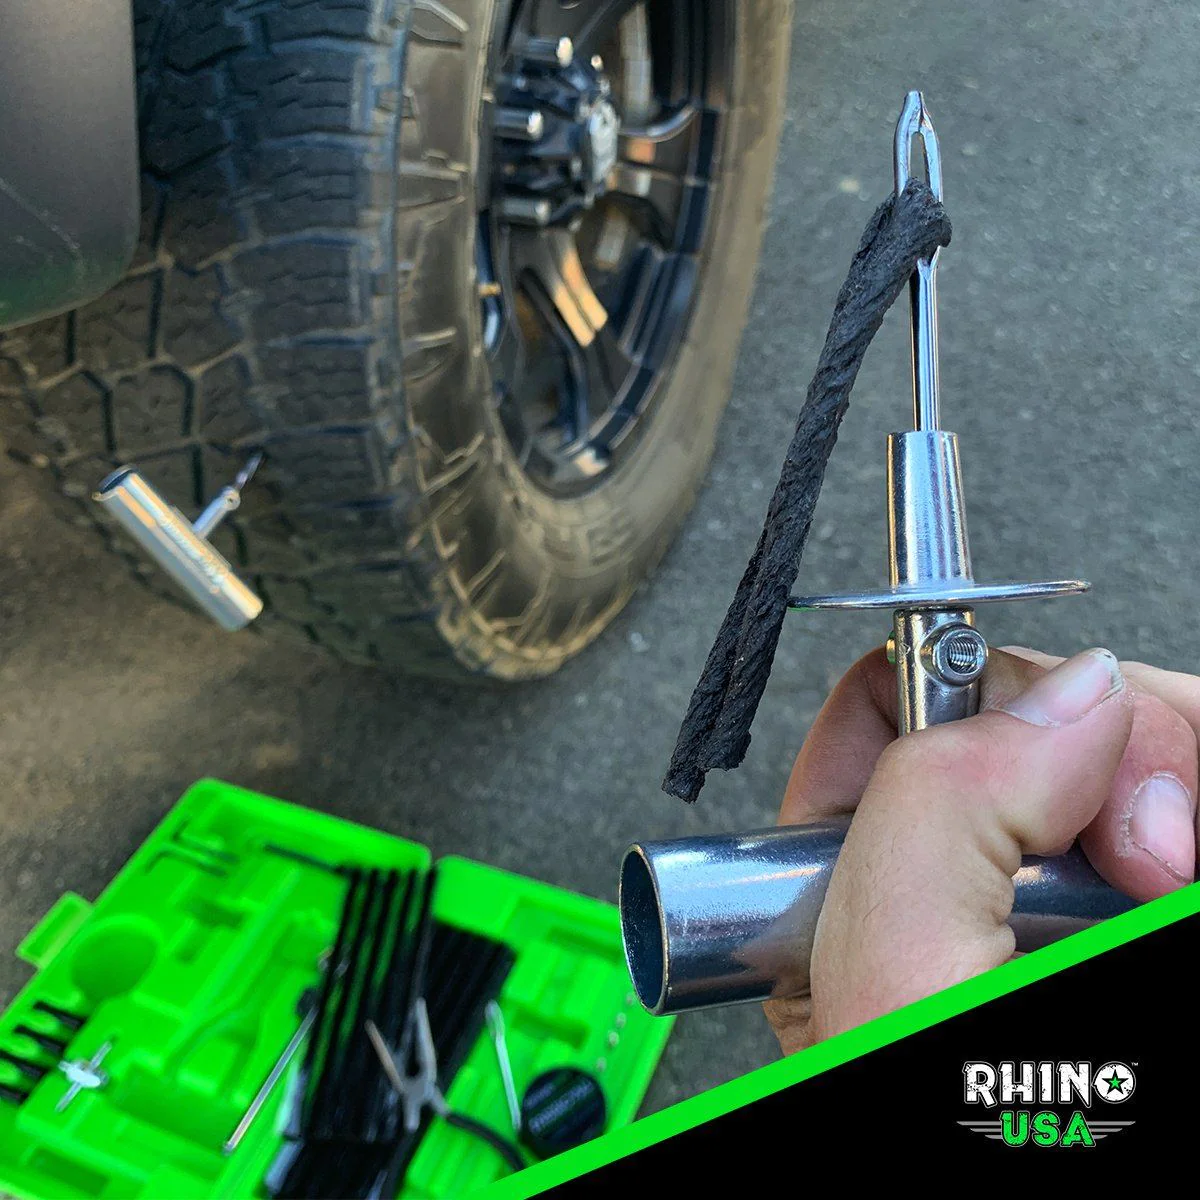 rhino usa 86 piece tire repair kit 1.jpg